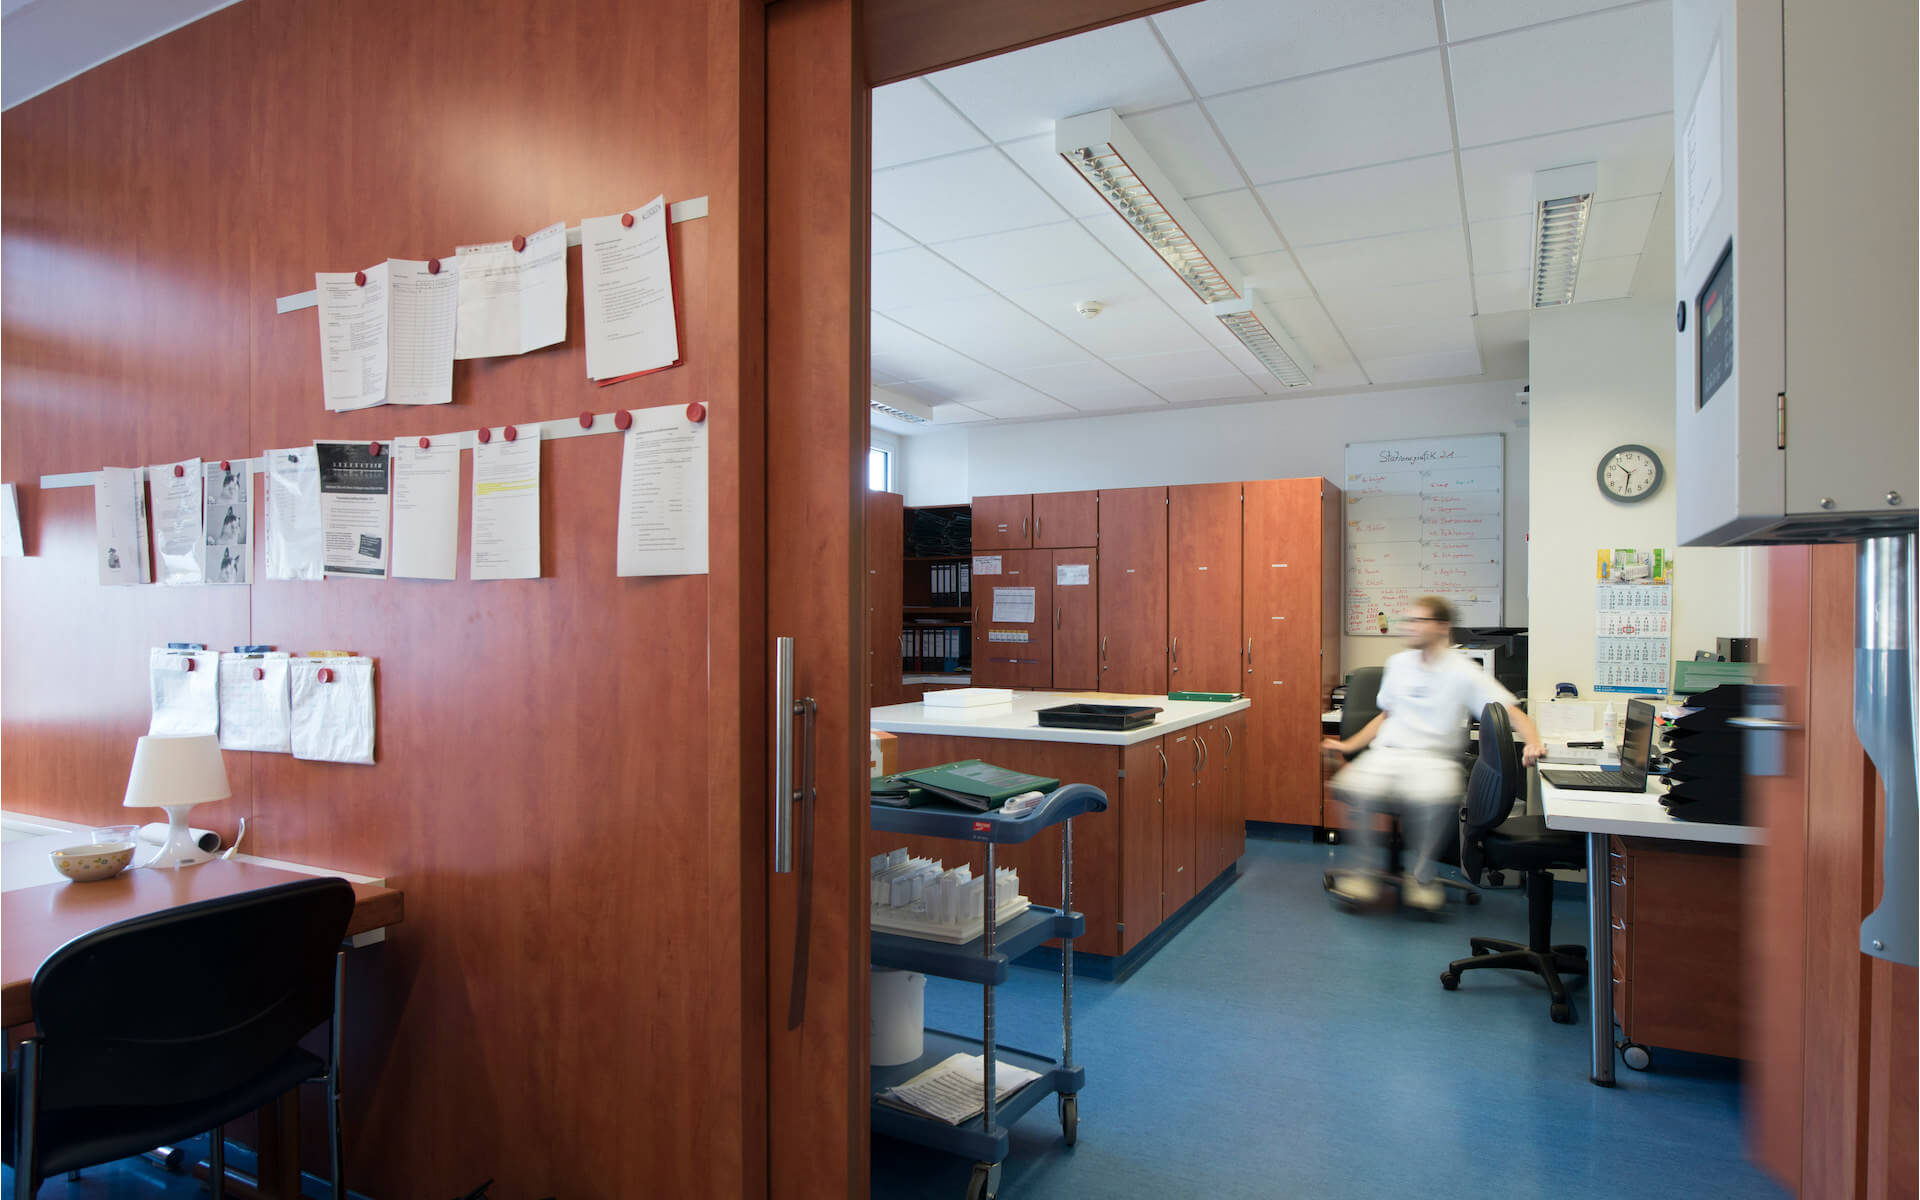 Büro und Büroeinrichtung in einer Klinik - Tischlerei Wieskötter